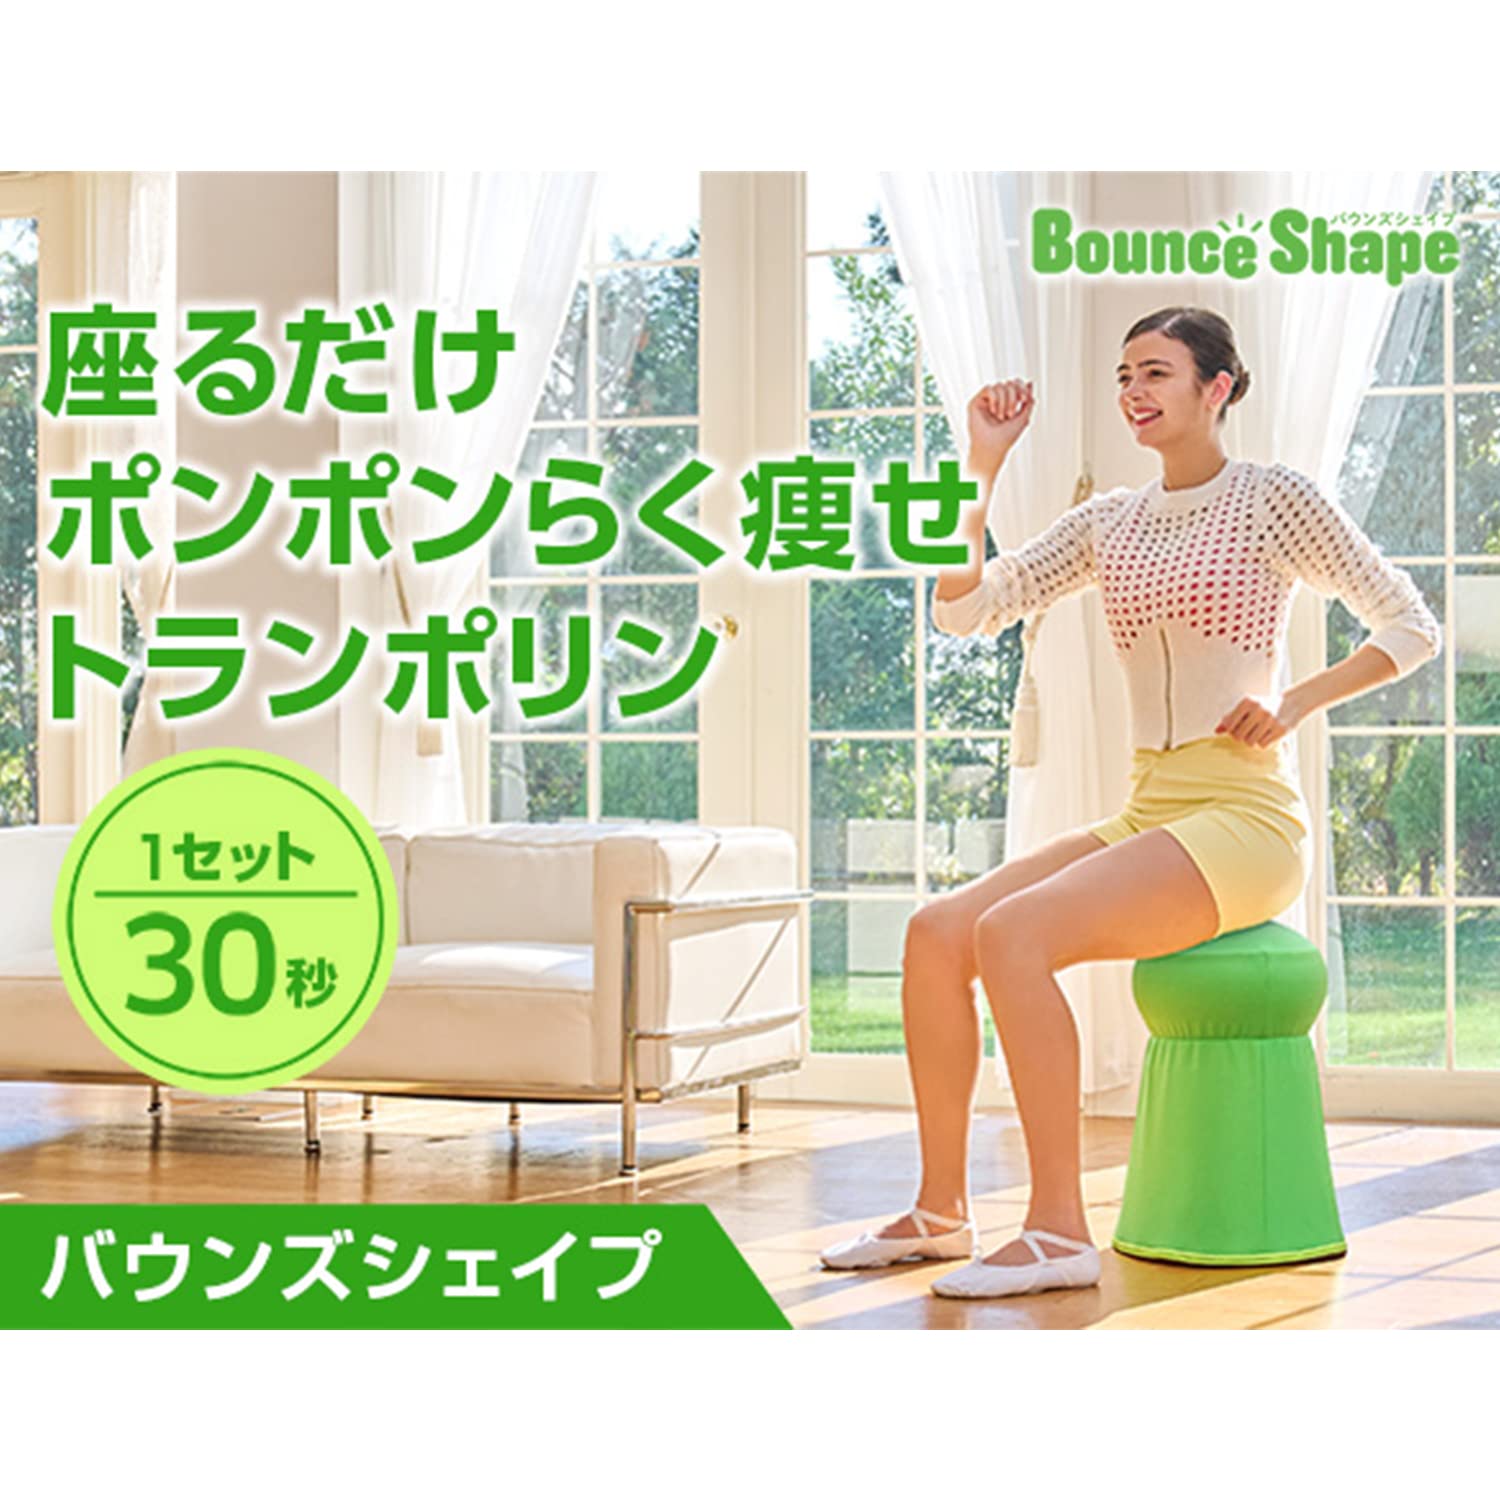 Buy ショップジャパン 【公式】 バウンズシェイプ | Fado168